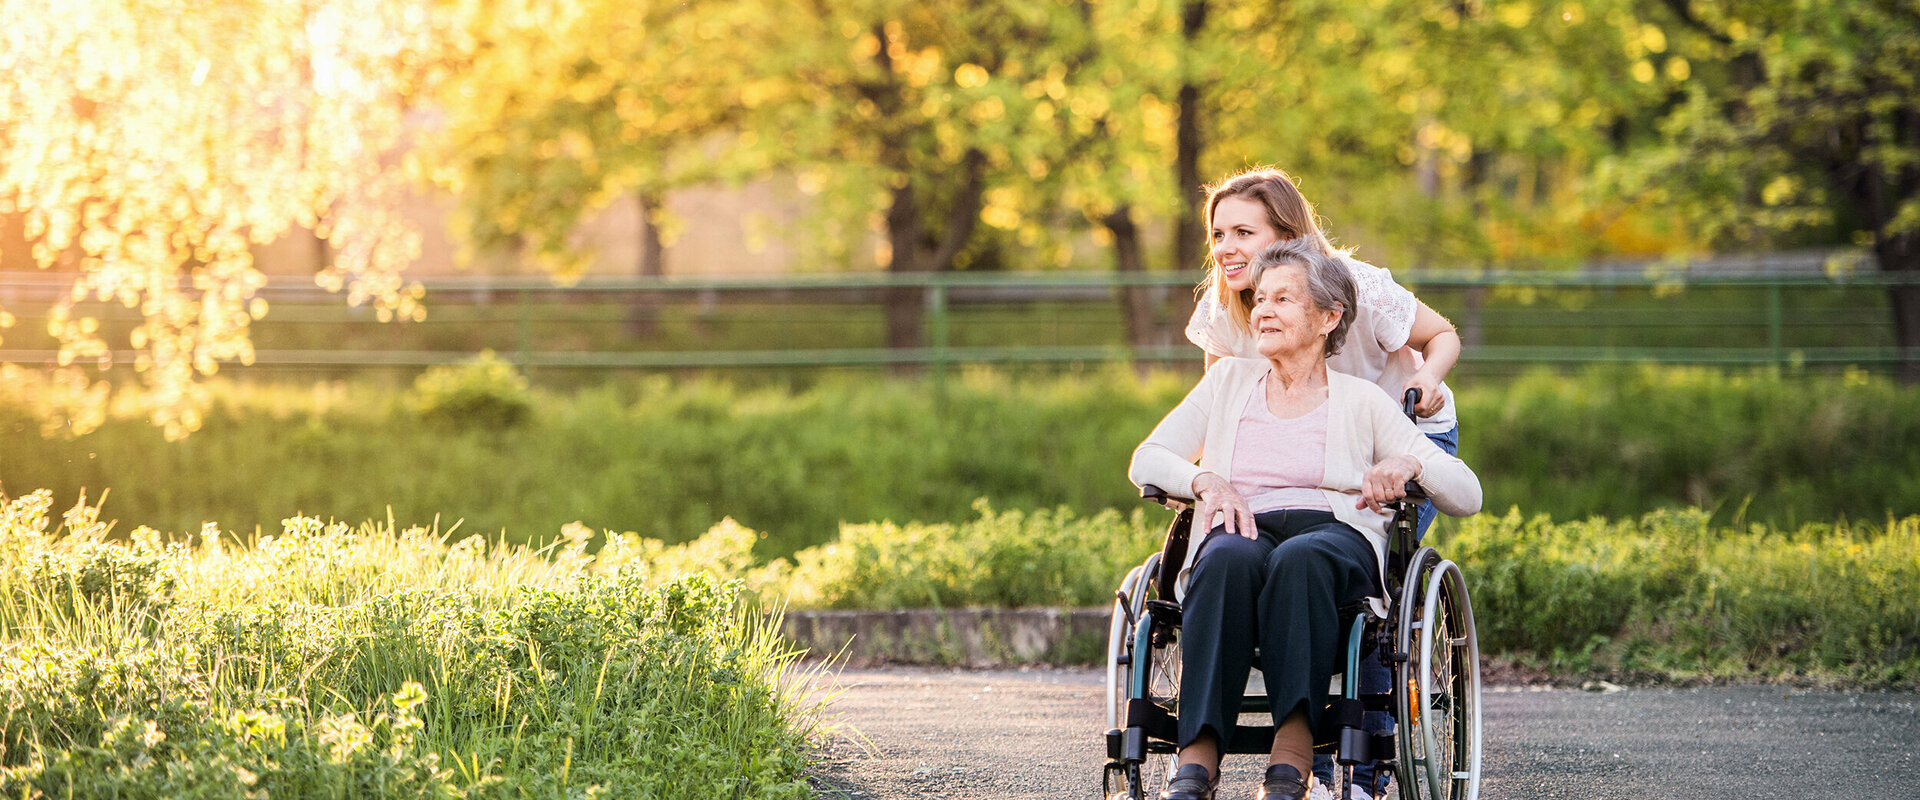 Seniorin / ältere Dame im Rollstuhl wird von einer jungen Frau auf einem sonnenbeschienenen, asphaltierten Weg geschoben. Links ein Blumenbeet, im Hintergrund Wiese, Blumen, Bäume und ein Zaun.